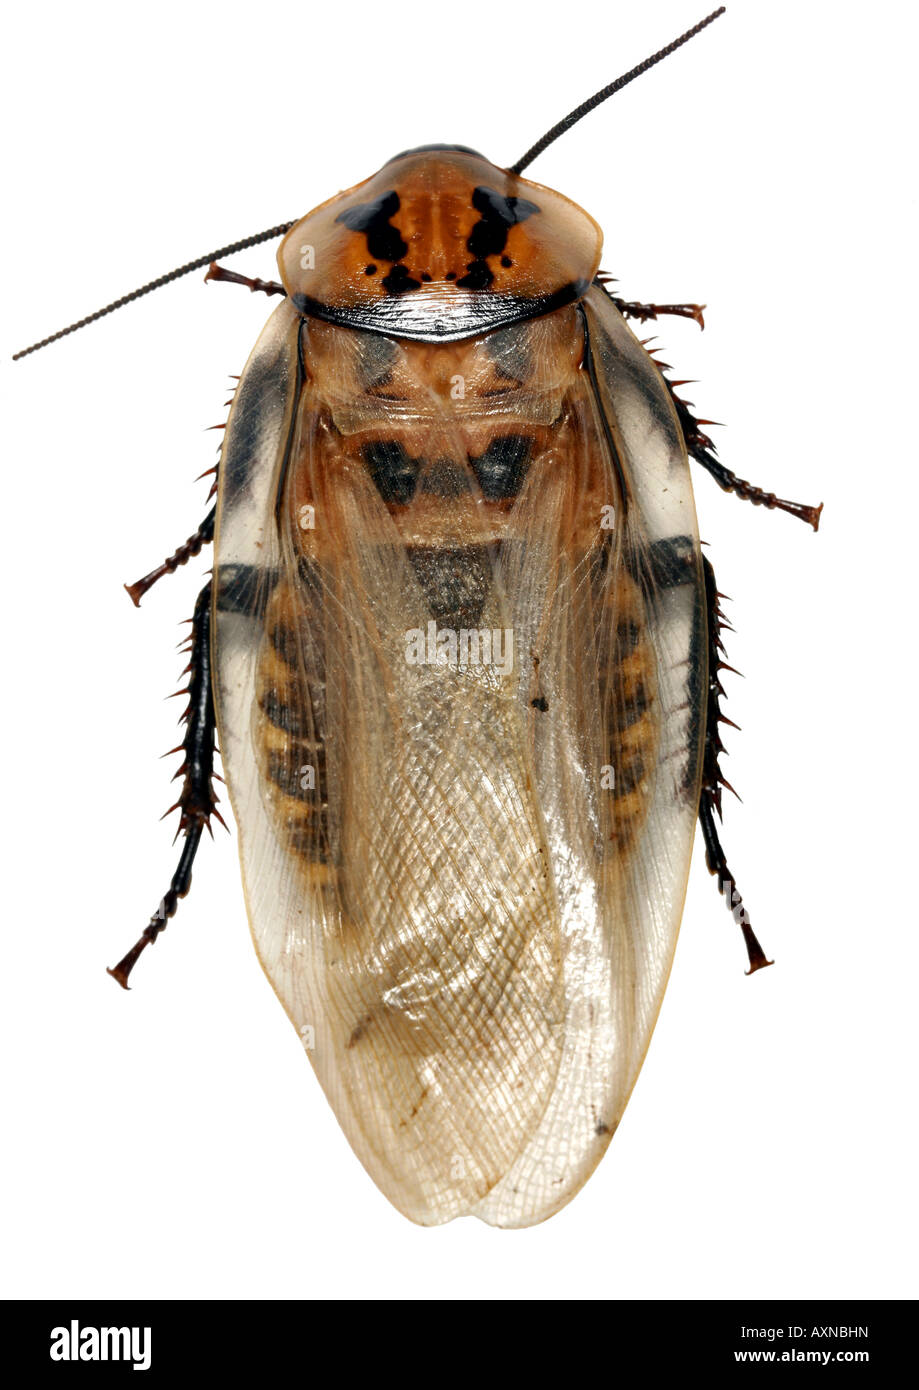 Testa di morte scarafaggio (Blabberus sp.) dall'Amazzonia ecuadoriana Foto Stock